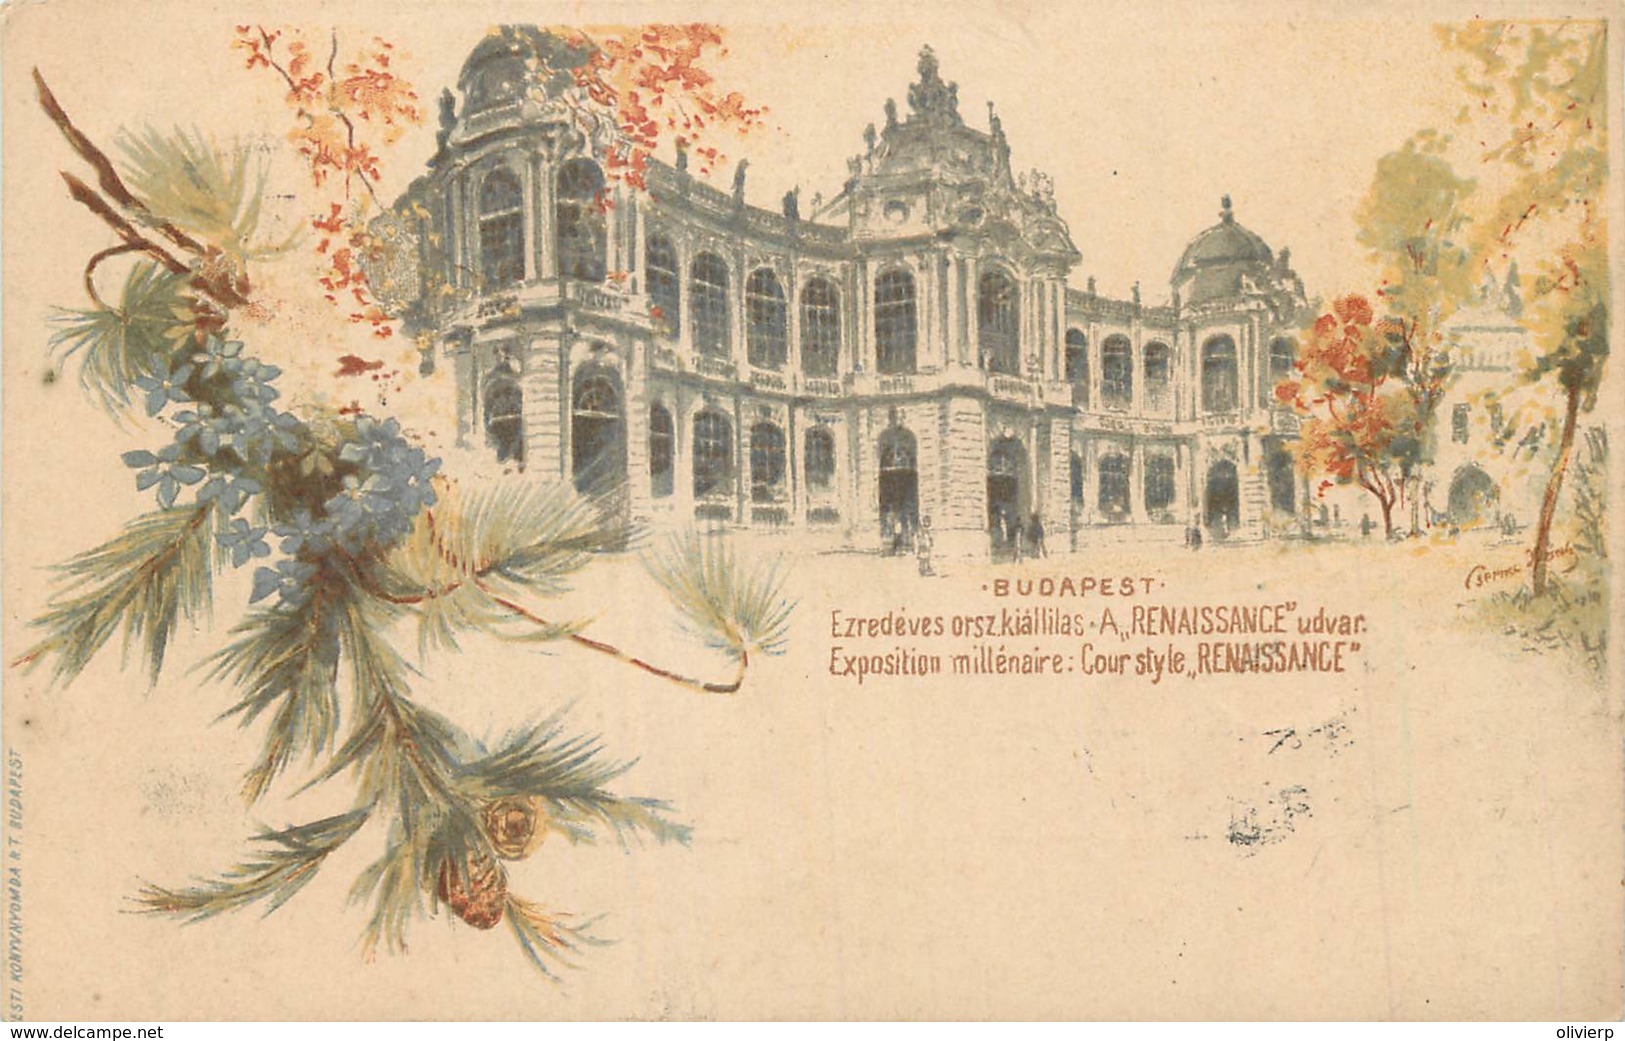 Hongrie - Type Gruss Aus - Budapest - Exposition Millénaire - Cour Style Renaissance - Ungarn